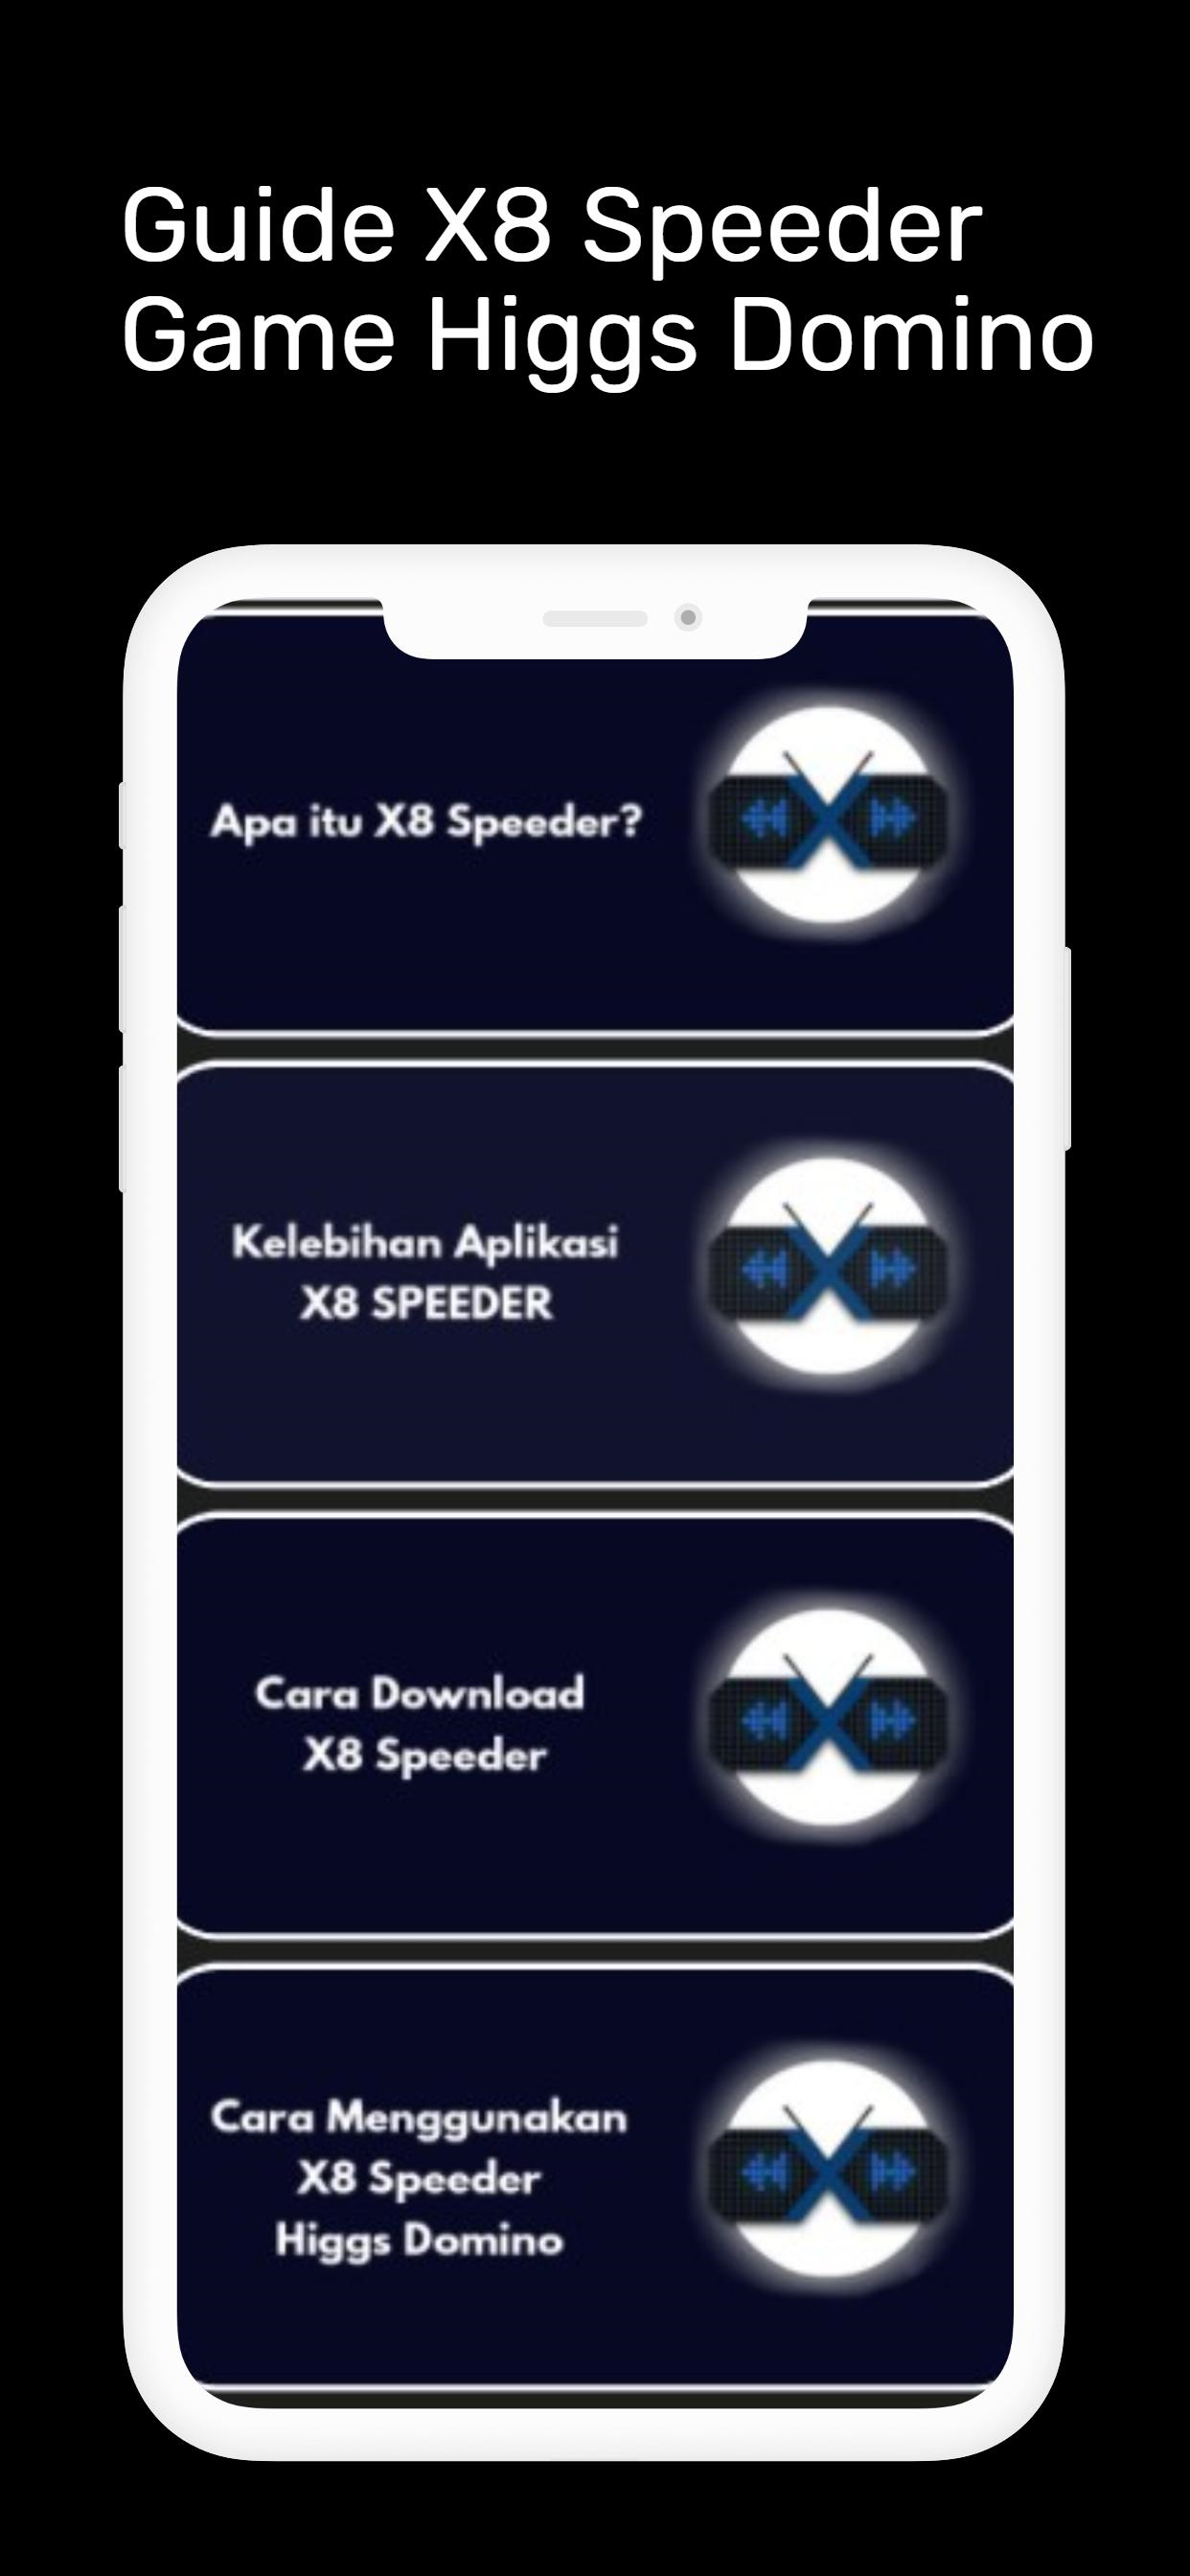 Speeder apk x8 X8 Speeder